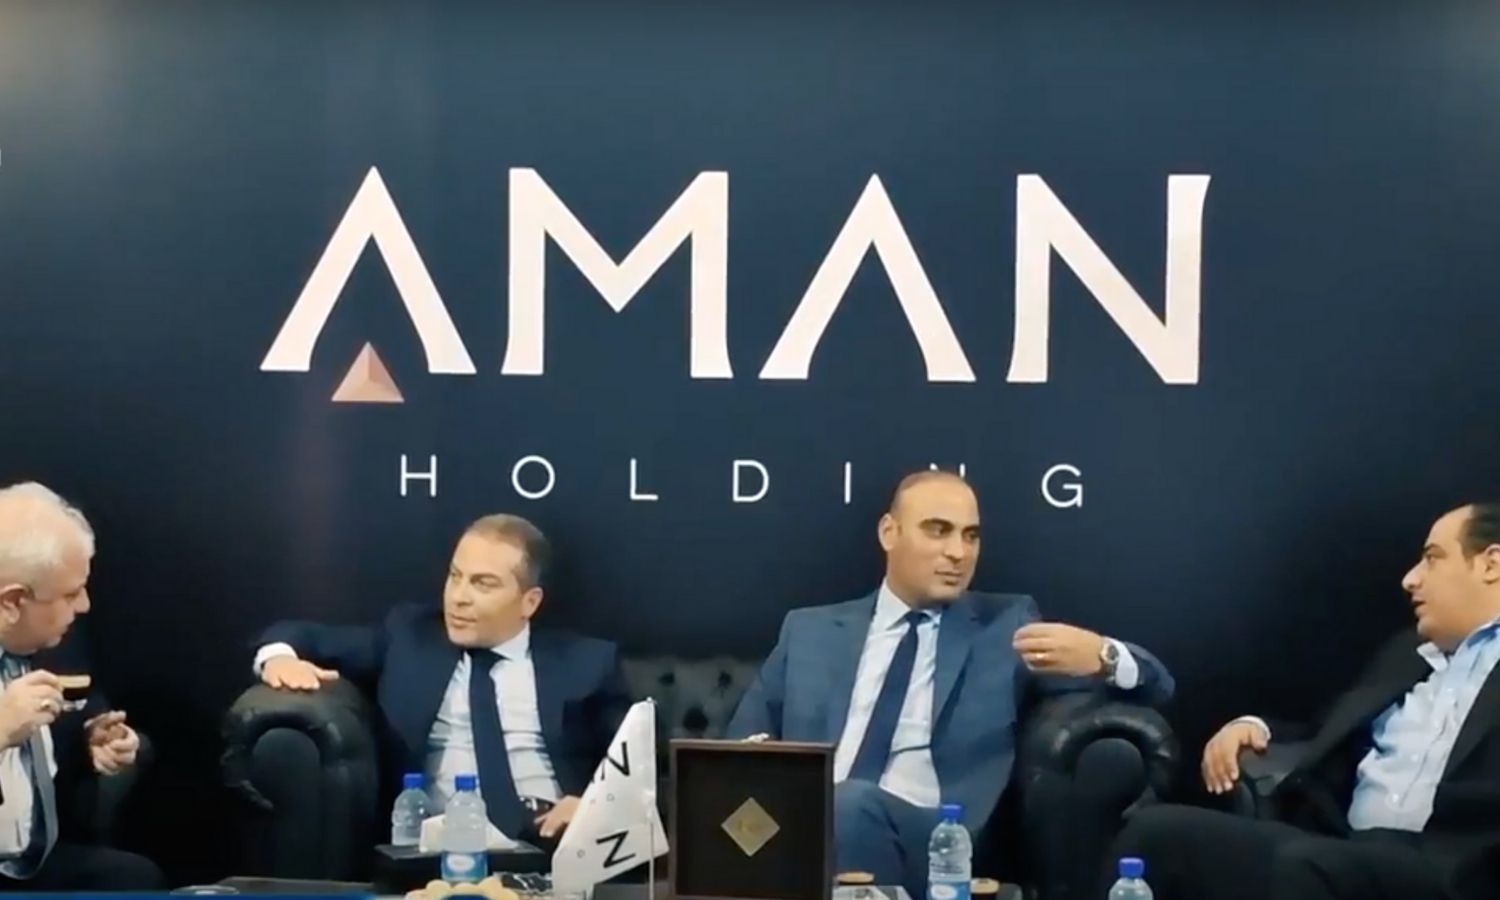 خلدون الزعبي (يمين) إلى جانب سامر فوز يفتتحان فرع شركة "أمان القابضة" في معرض دمشق الدولي - أيلول 2018 (قناة الحدث العربي في يوتيوب)